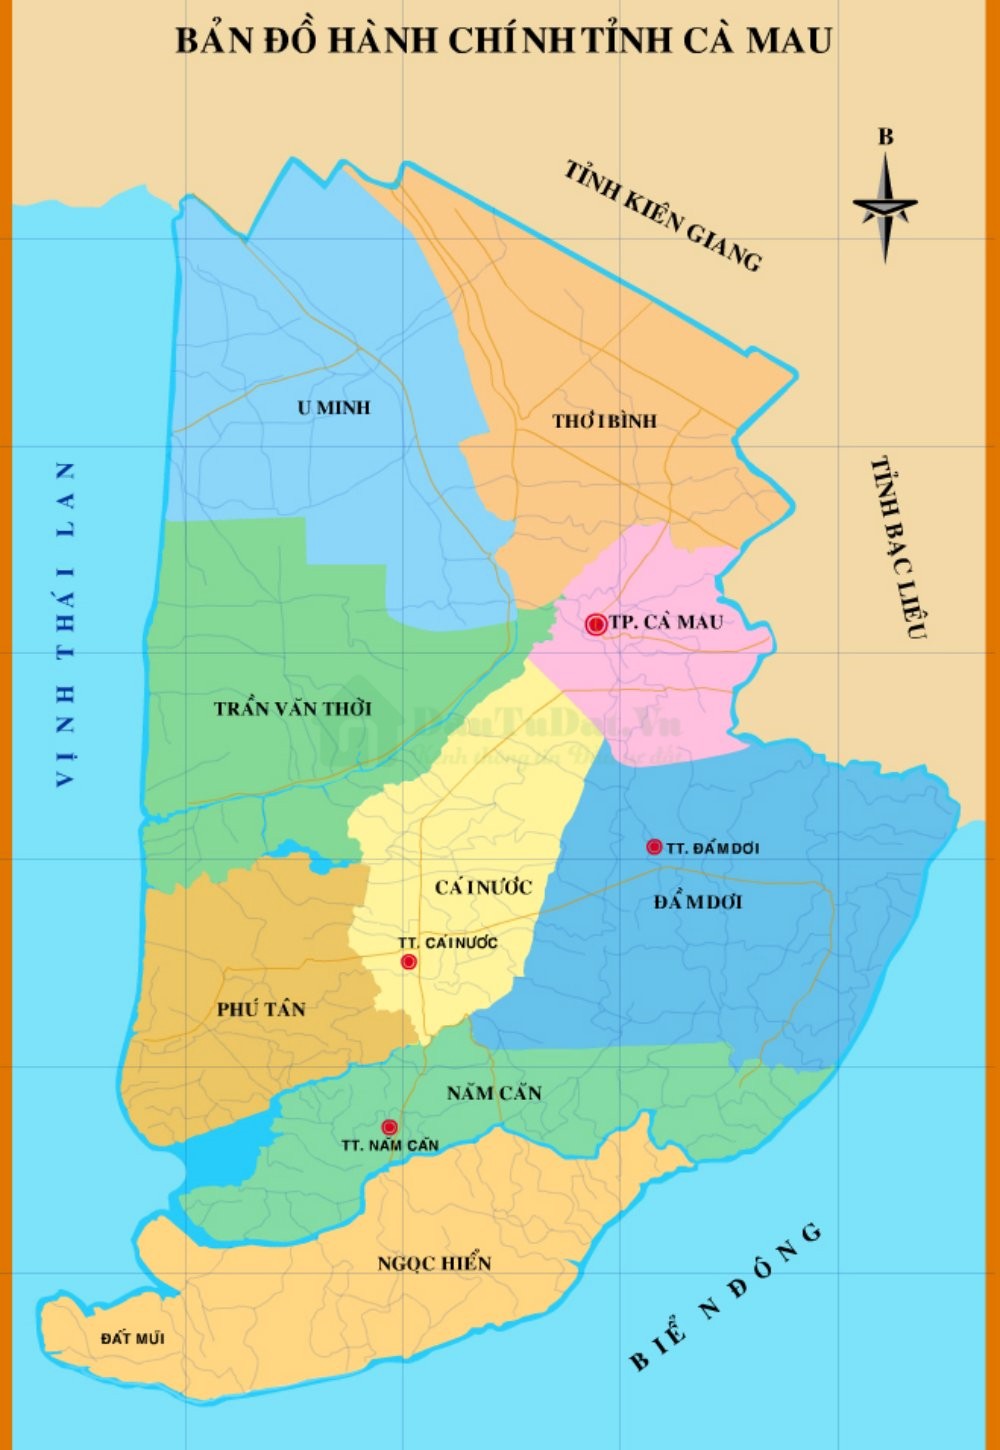 Bản đồ hành chính tỉnh Cà Mau